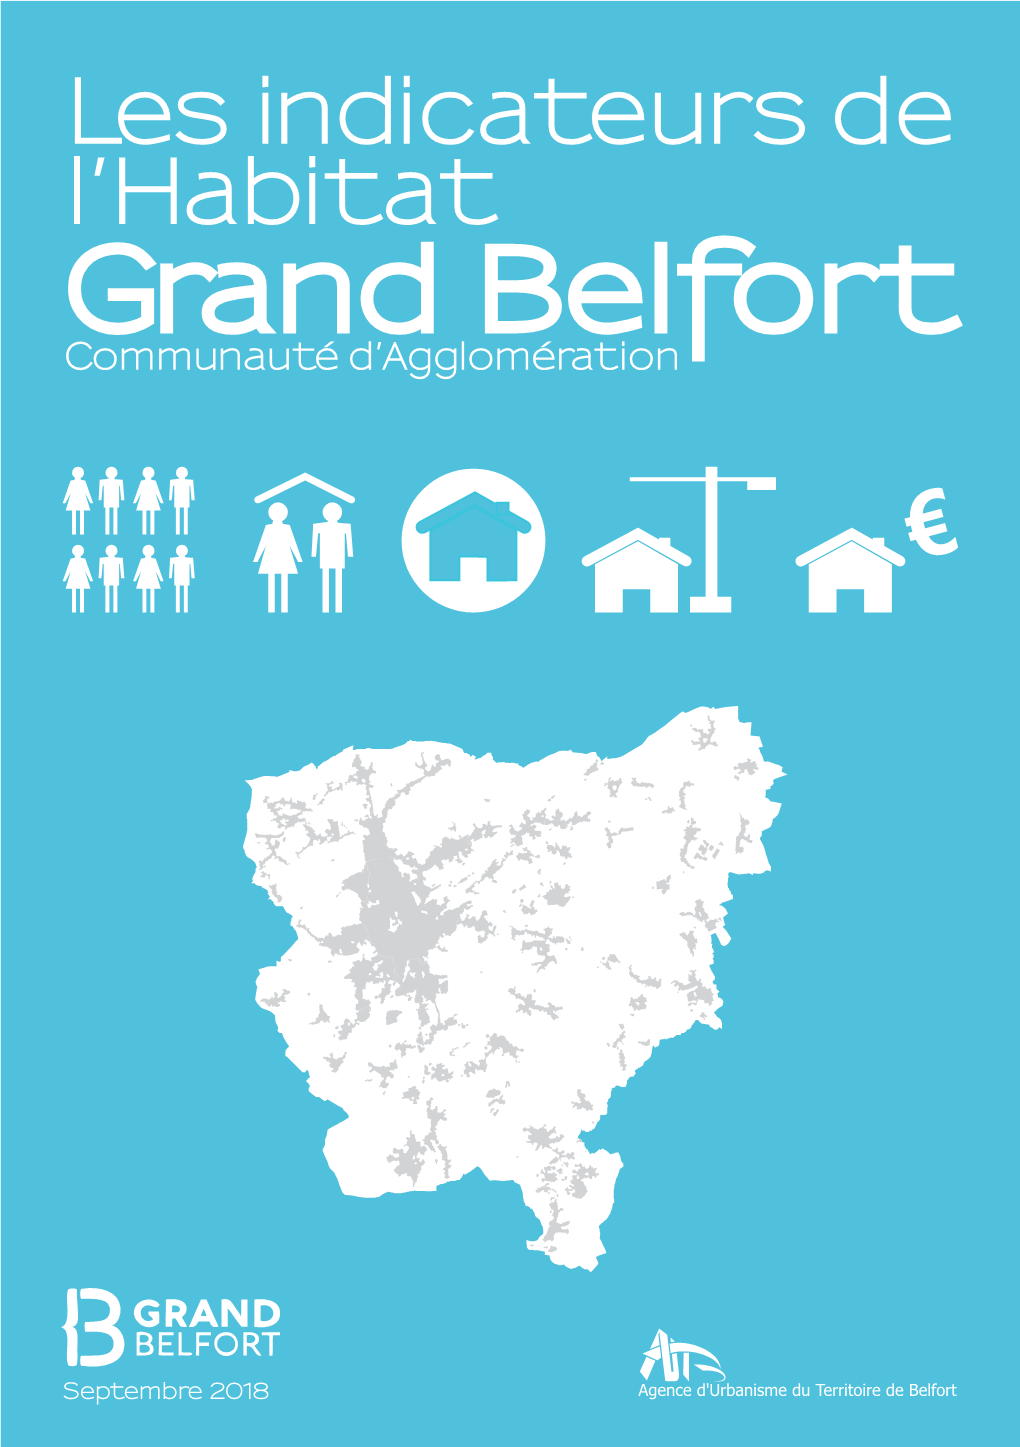 Grand Belfort Depuis 1968 105 390 Habitants En 2015 Dans Le Grand Belfort 105 390 La Population Du Grand Belfort Par Communes En 2015 103 989